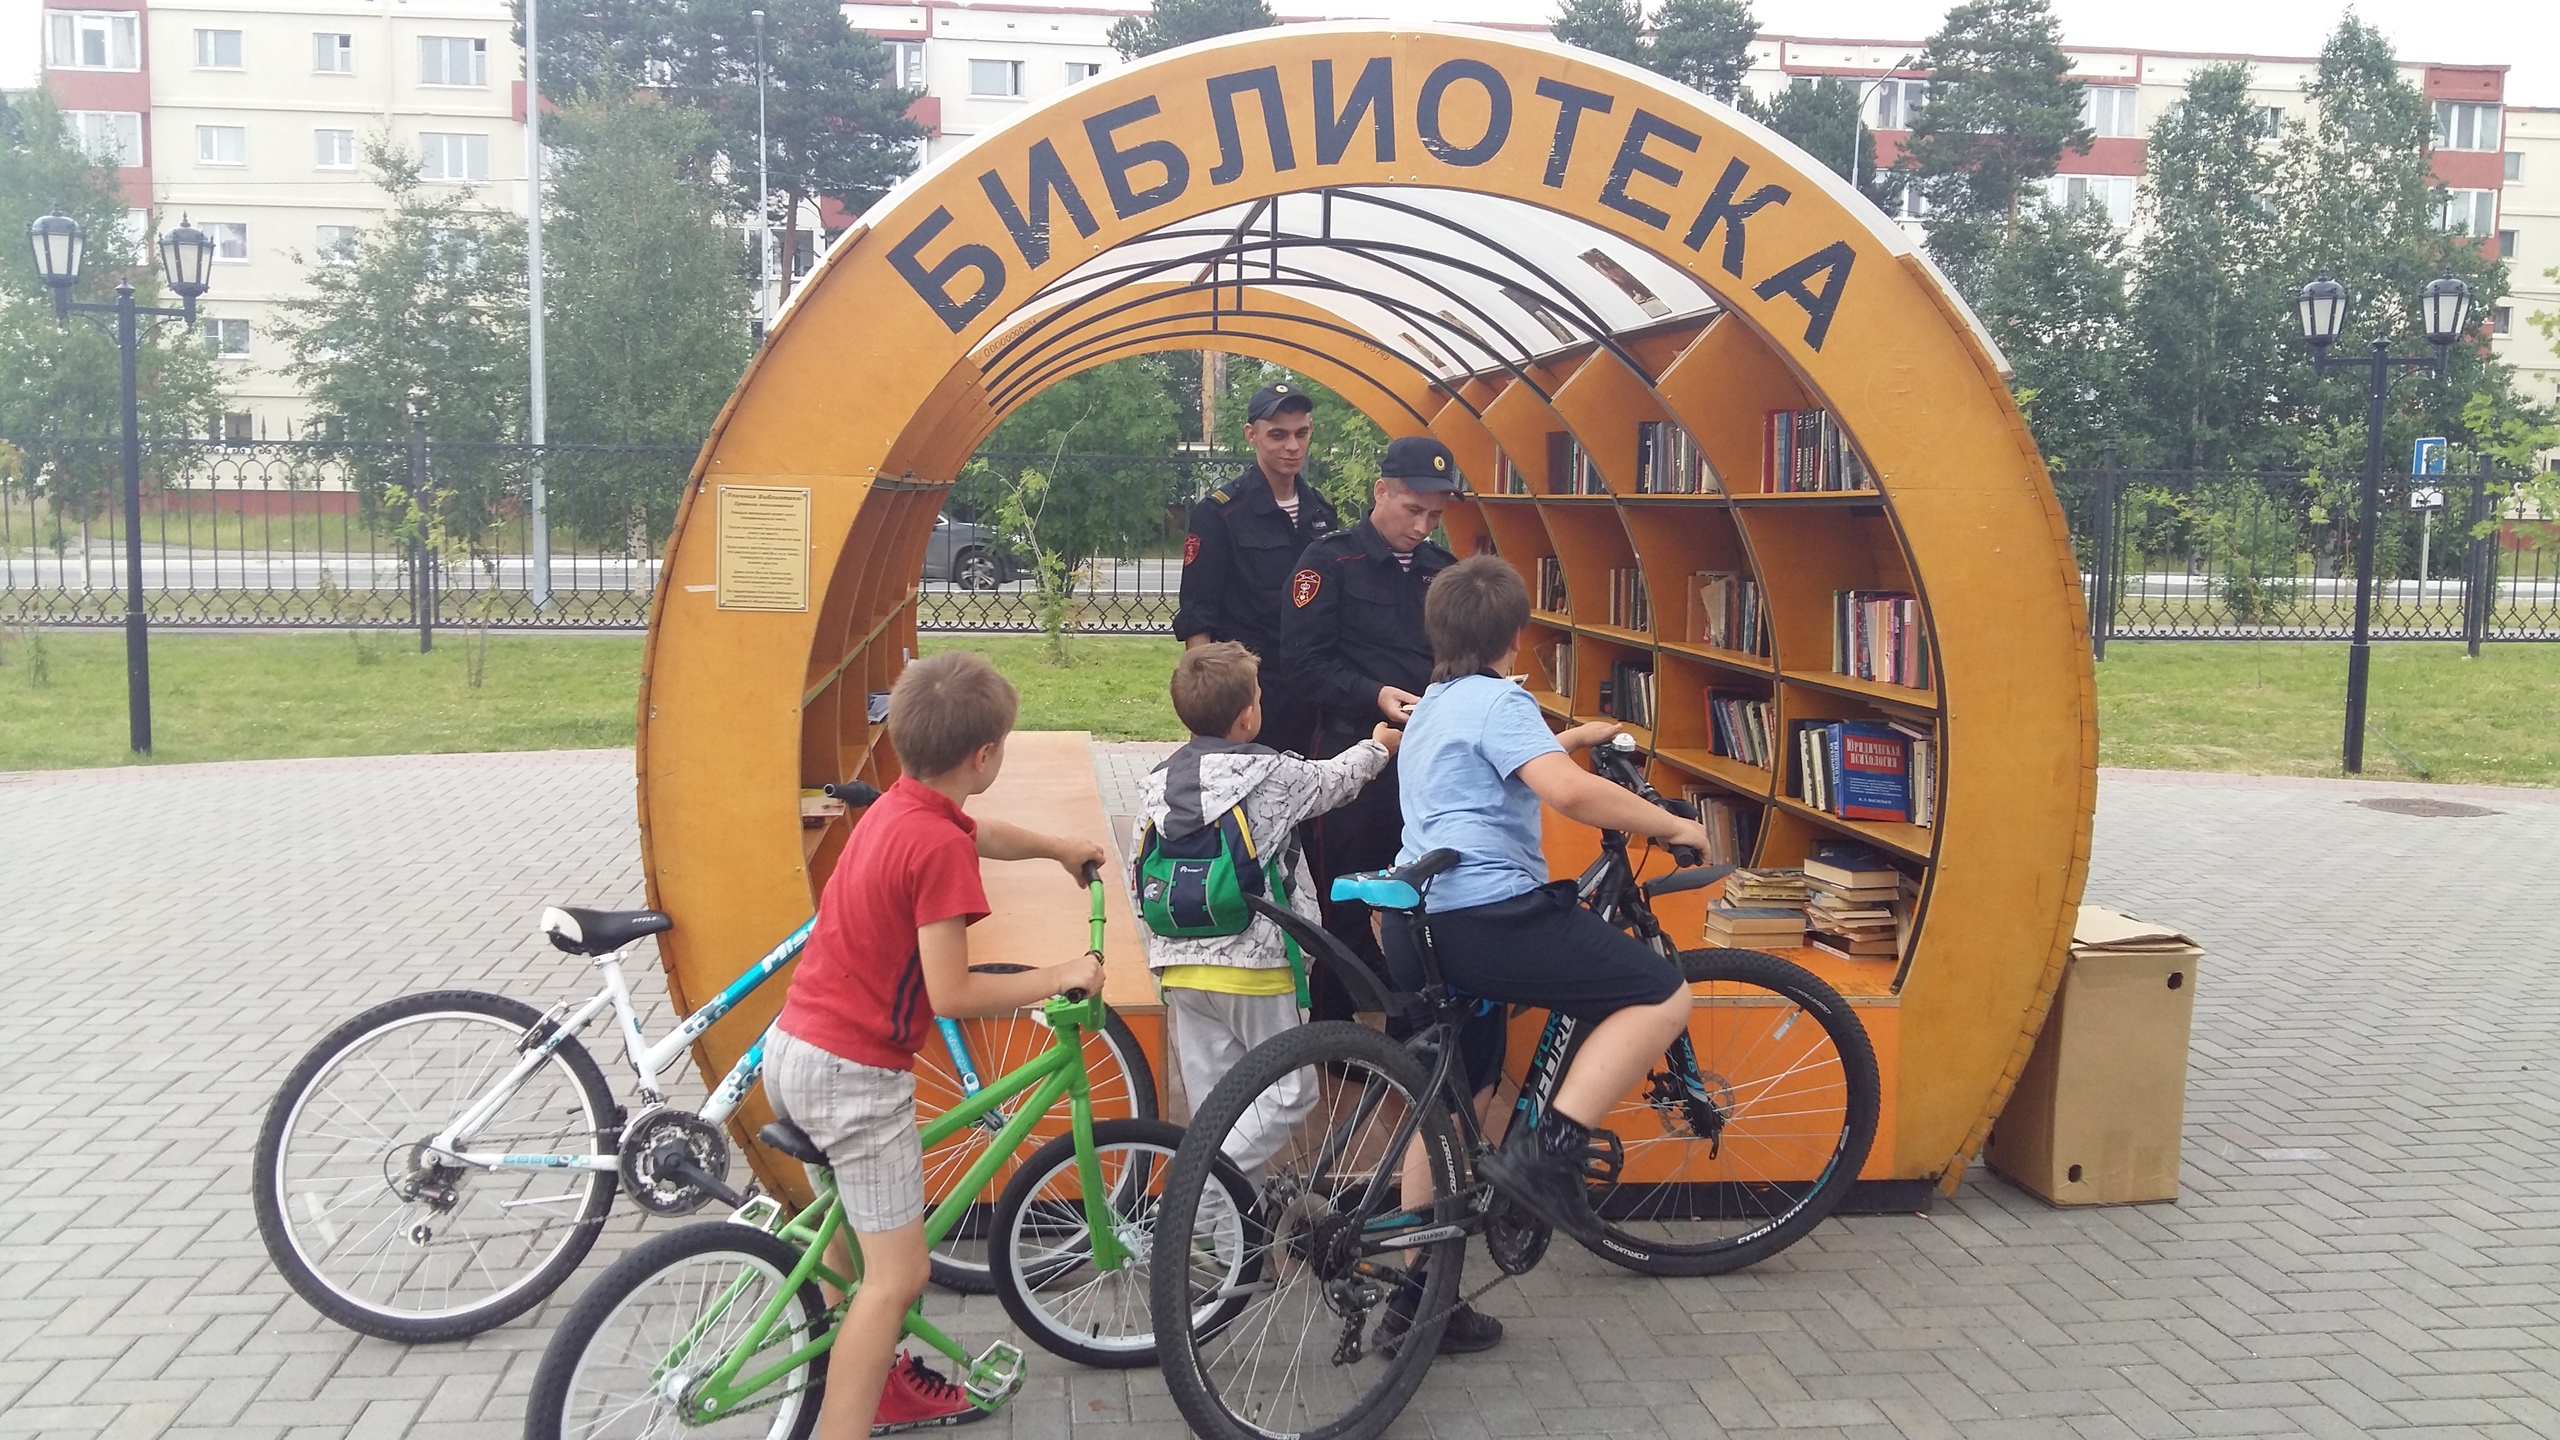 Библиотека когалым. Буккроссинг. Уличная библиотека в парке. Буккроссинг Екатеринбург. Буккроссинг Кузьминский парк.